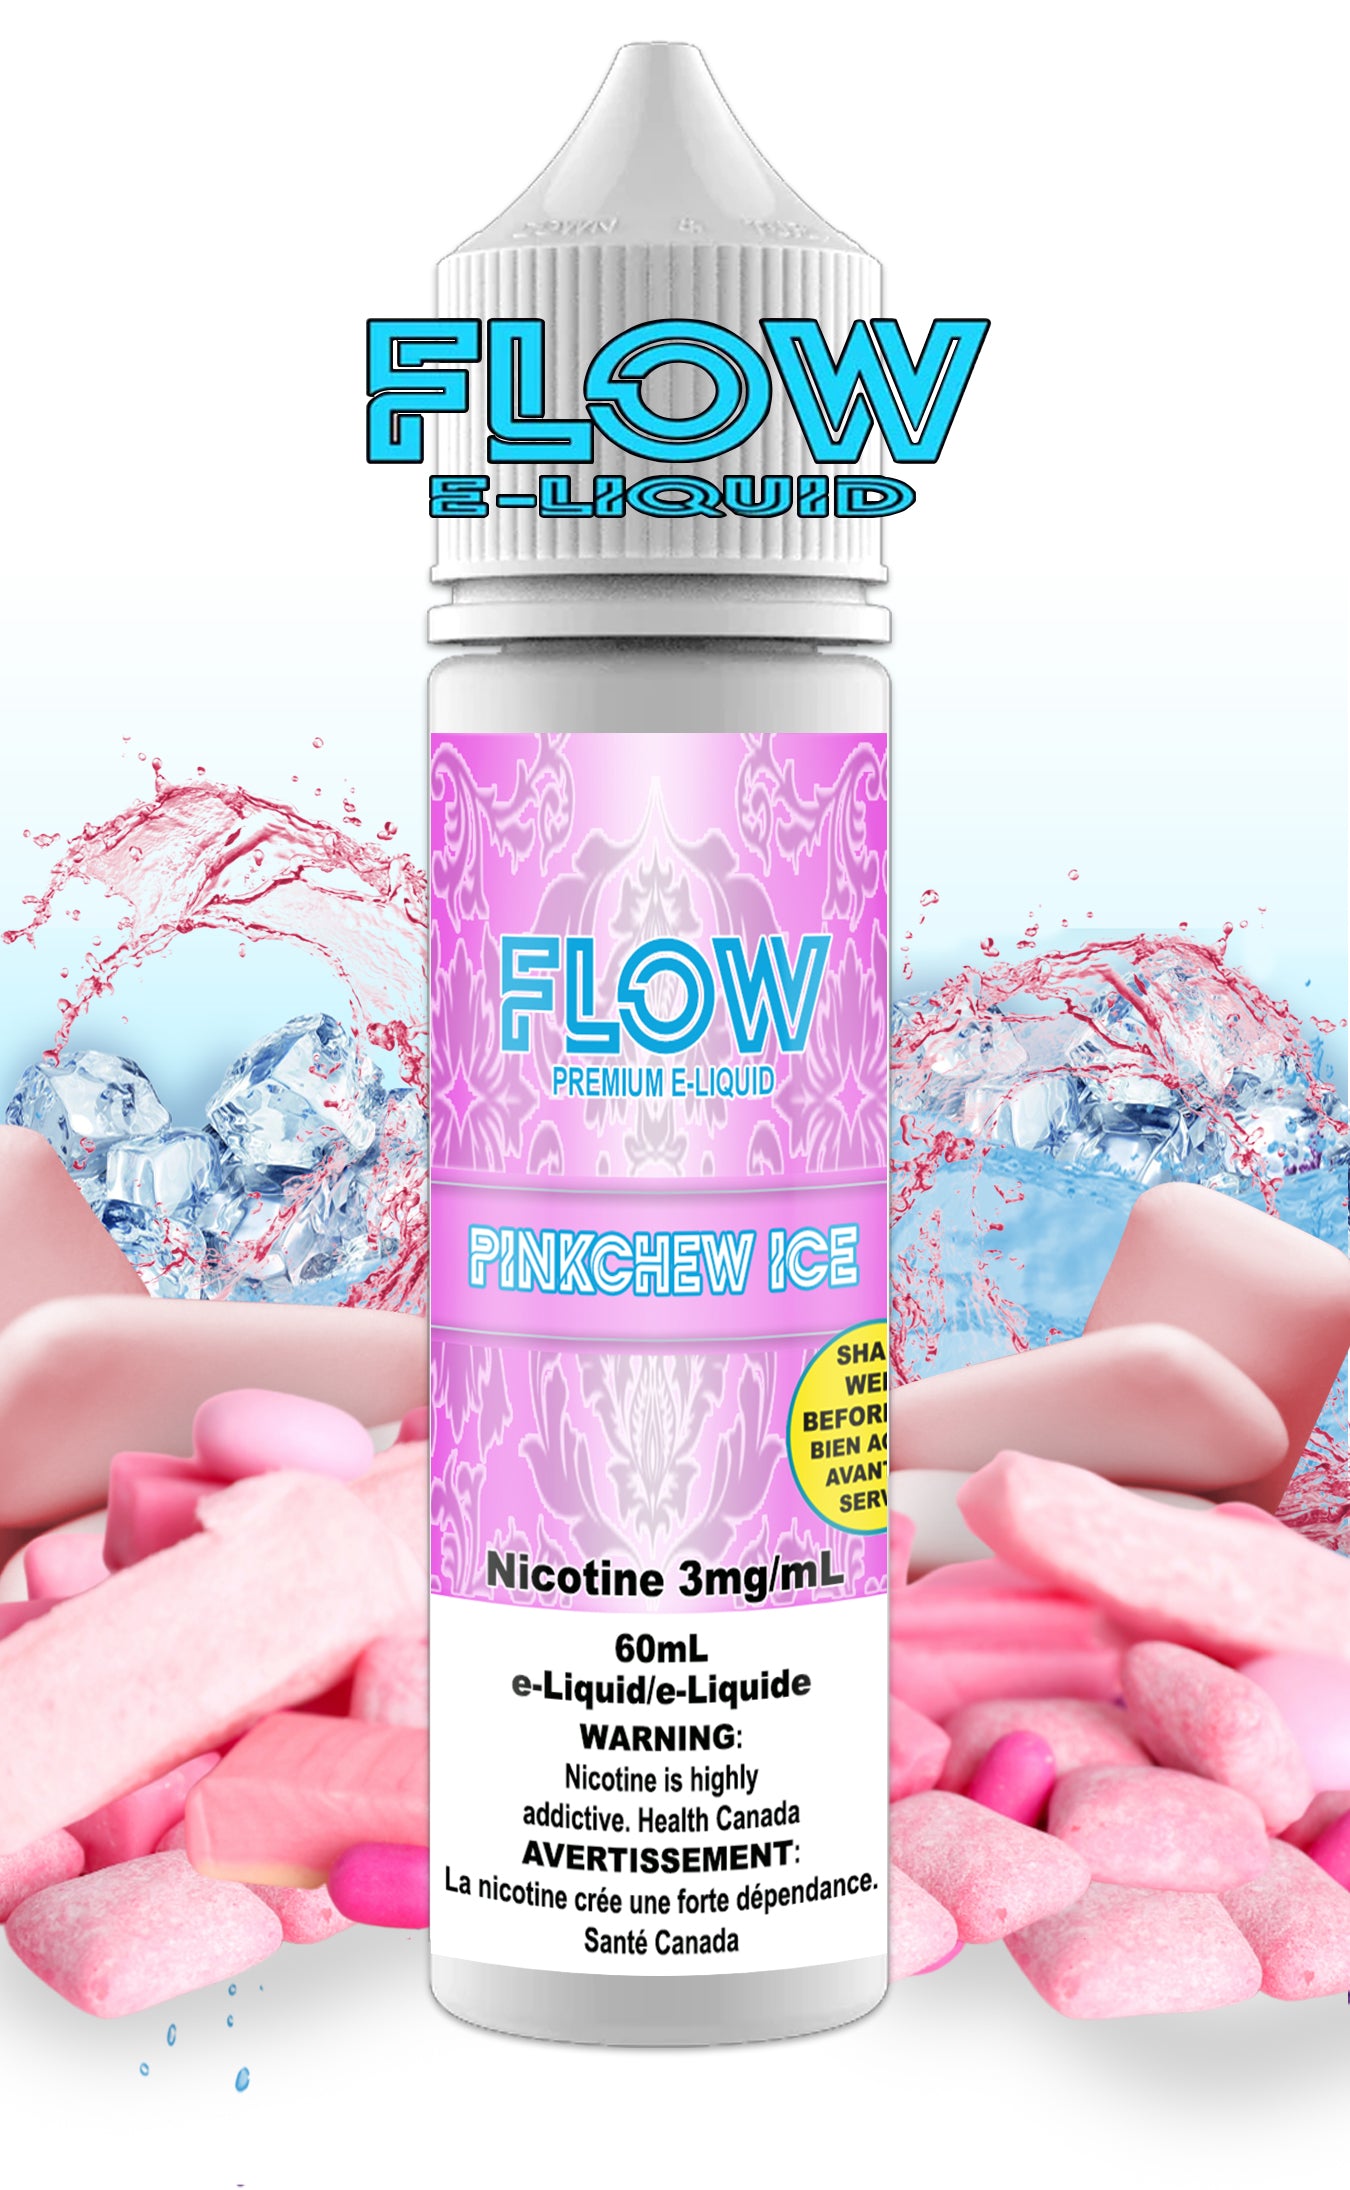 FLOW E-LIQUID - PINK CHEW ICE